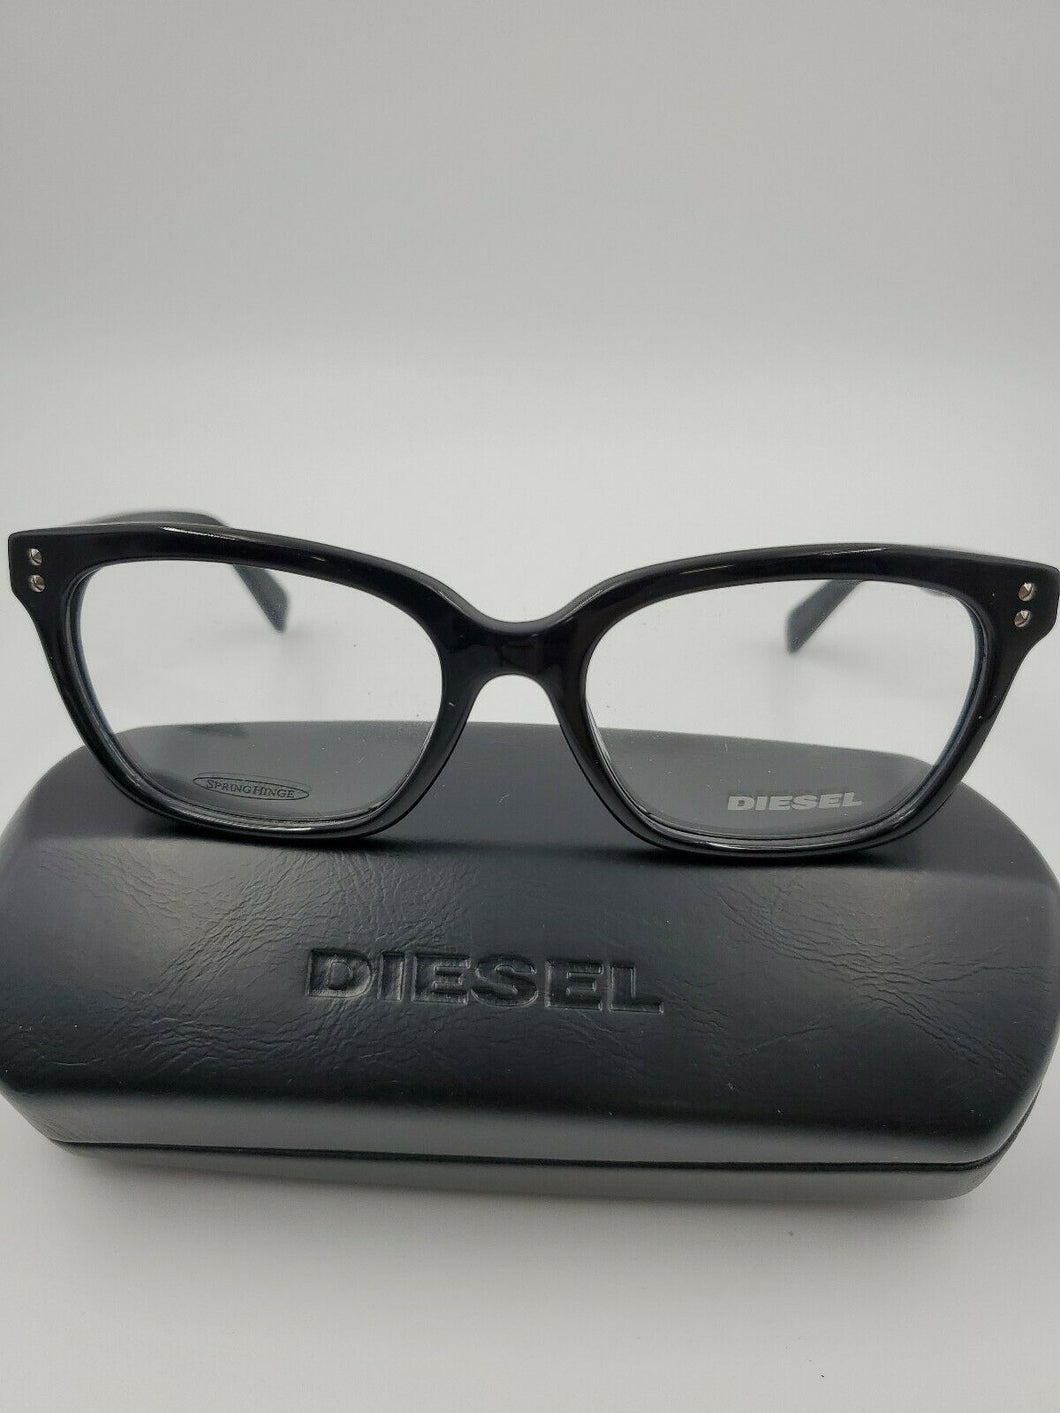 NEW DIESEL Eyeglasses DL5037 001 Size 53mm/17mm/140mm BLACK PRESCRIPTION FRAMES